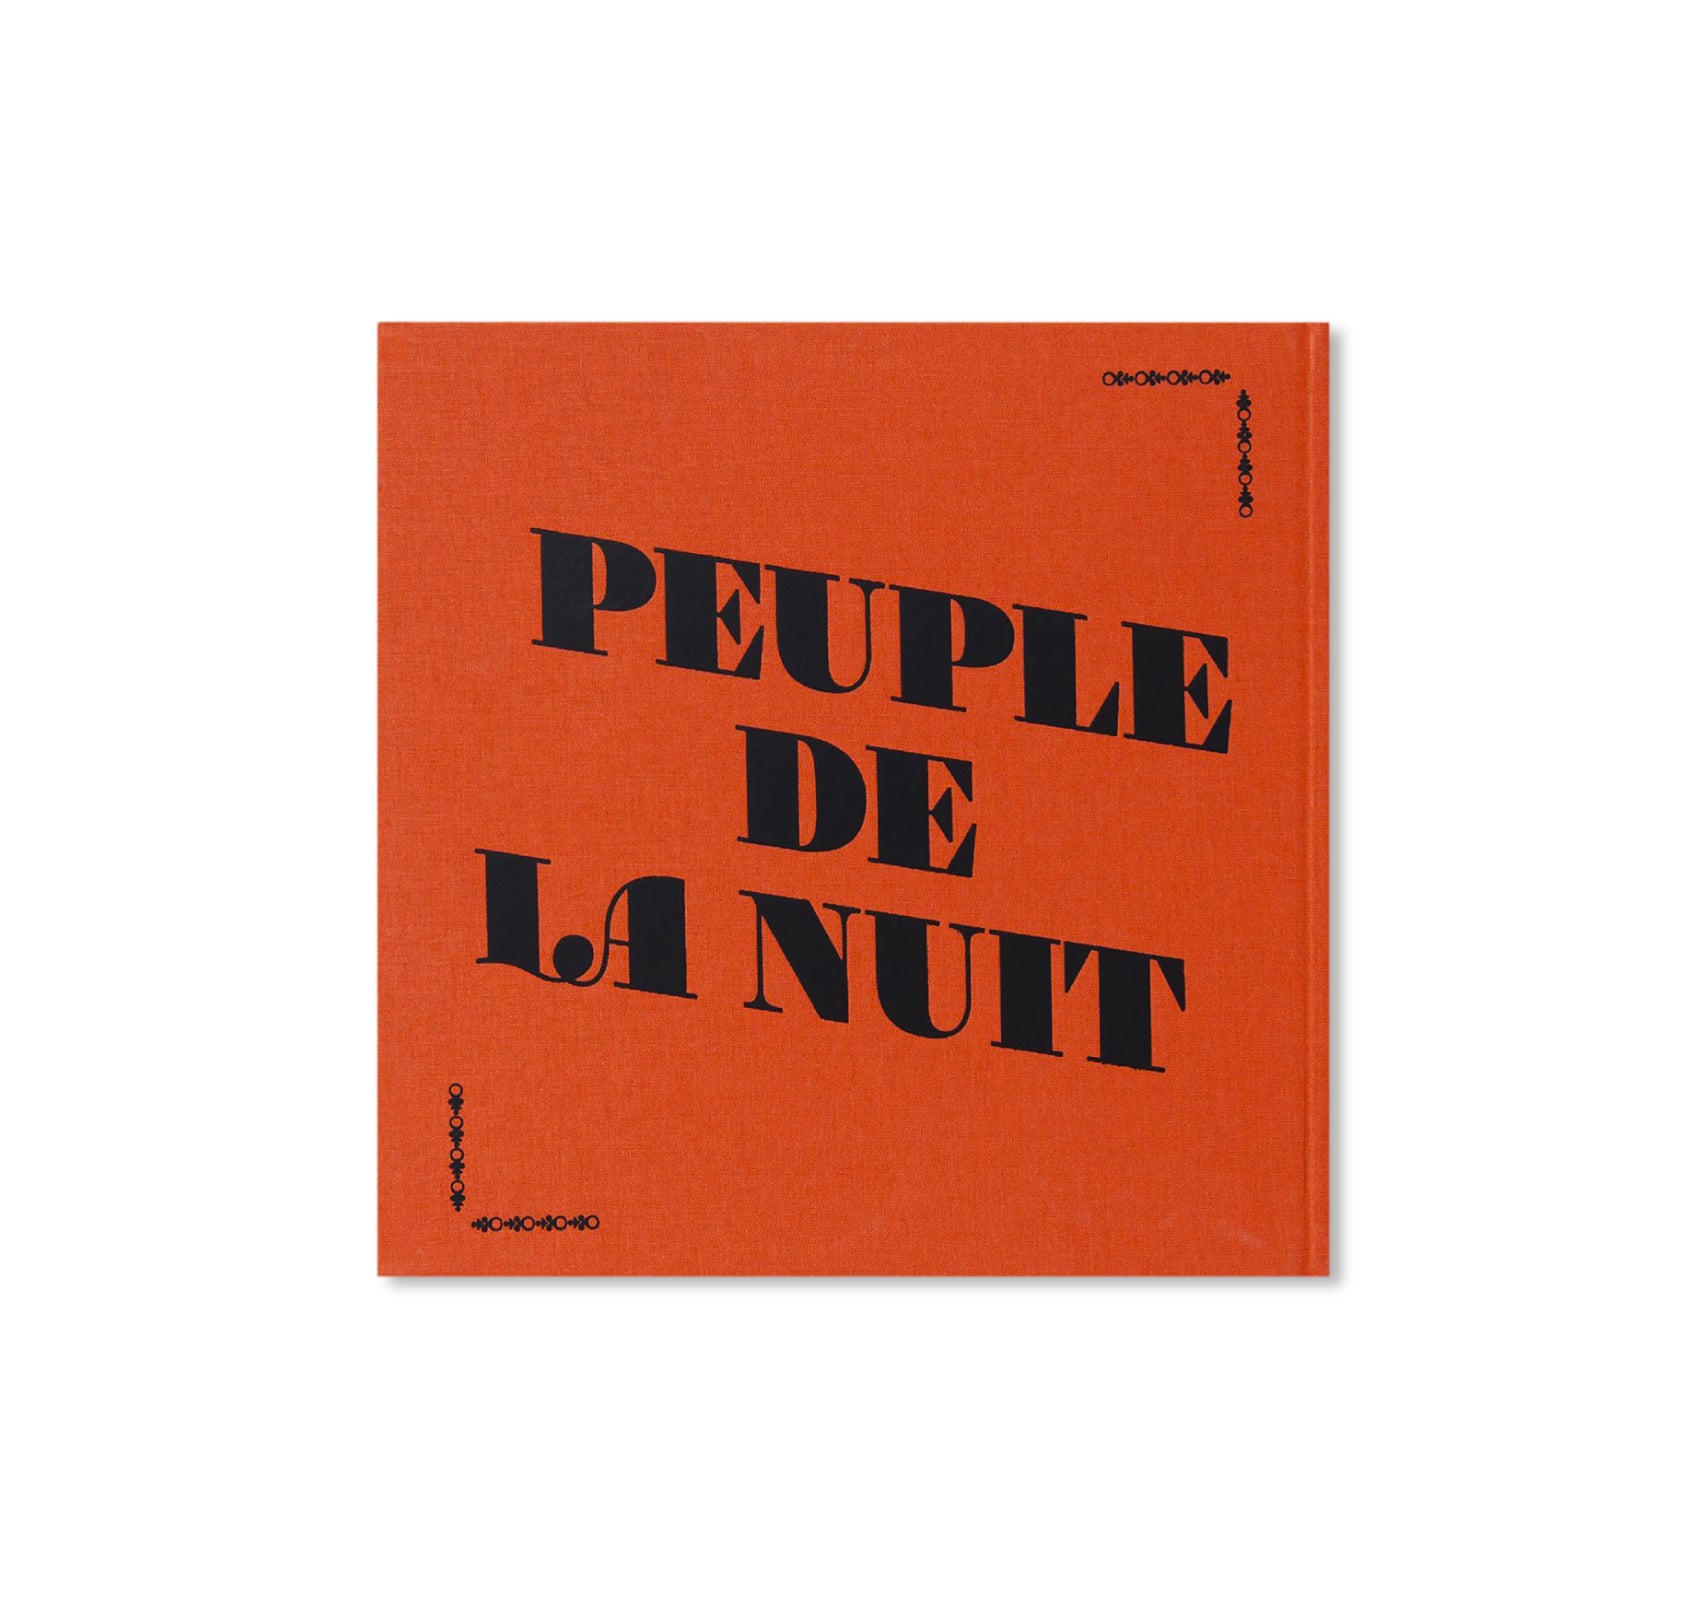 PEUPLE DE LA NUIT by Sanlé Sory